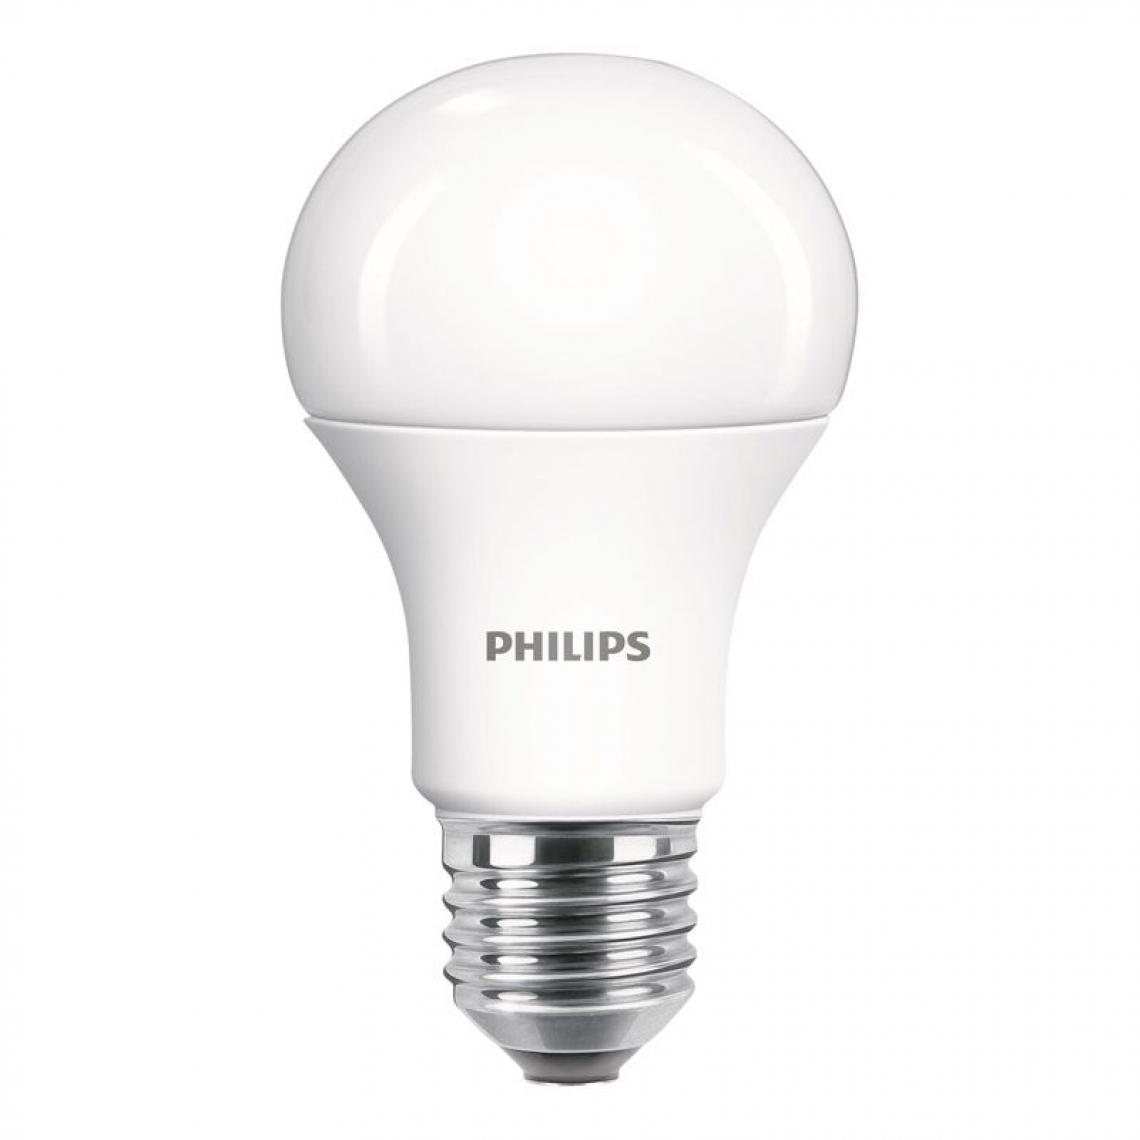 Philips - lot de 2 ampoules LED E27 PHILIPS EQ100 standard blanc froid - Ampoules LED